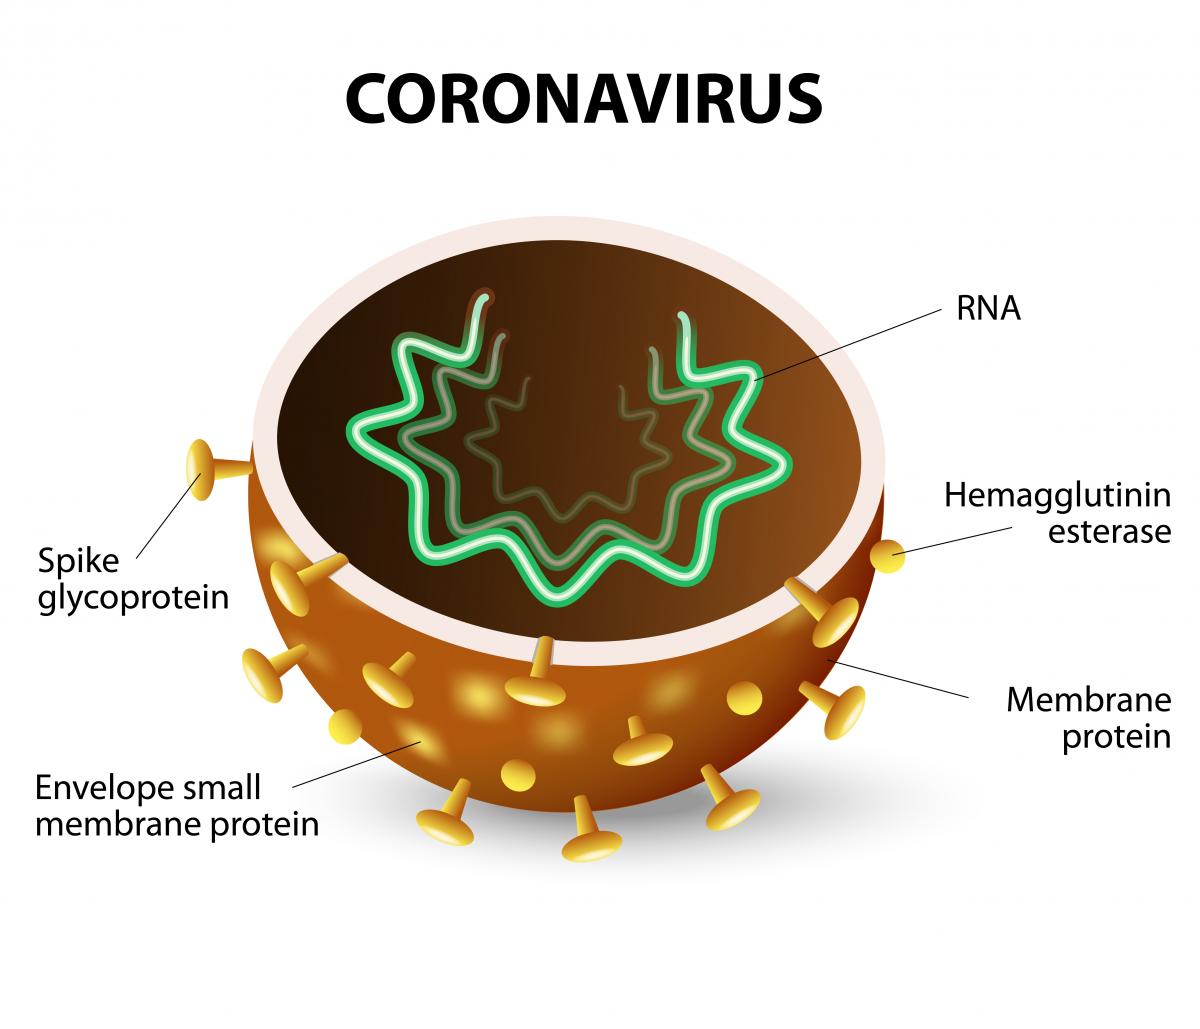 Korona virus u Hrvatskoj. Coronavirus SARS-CoV-2 uzrokuje COVID-19